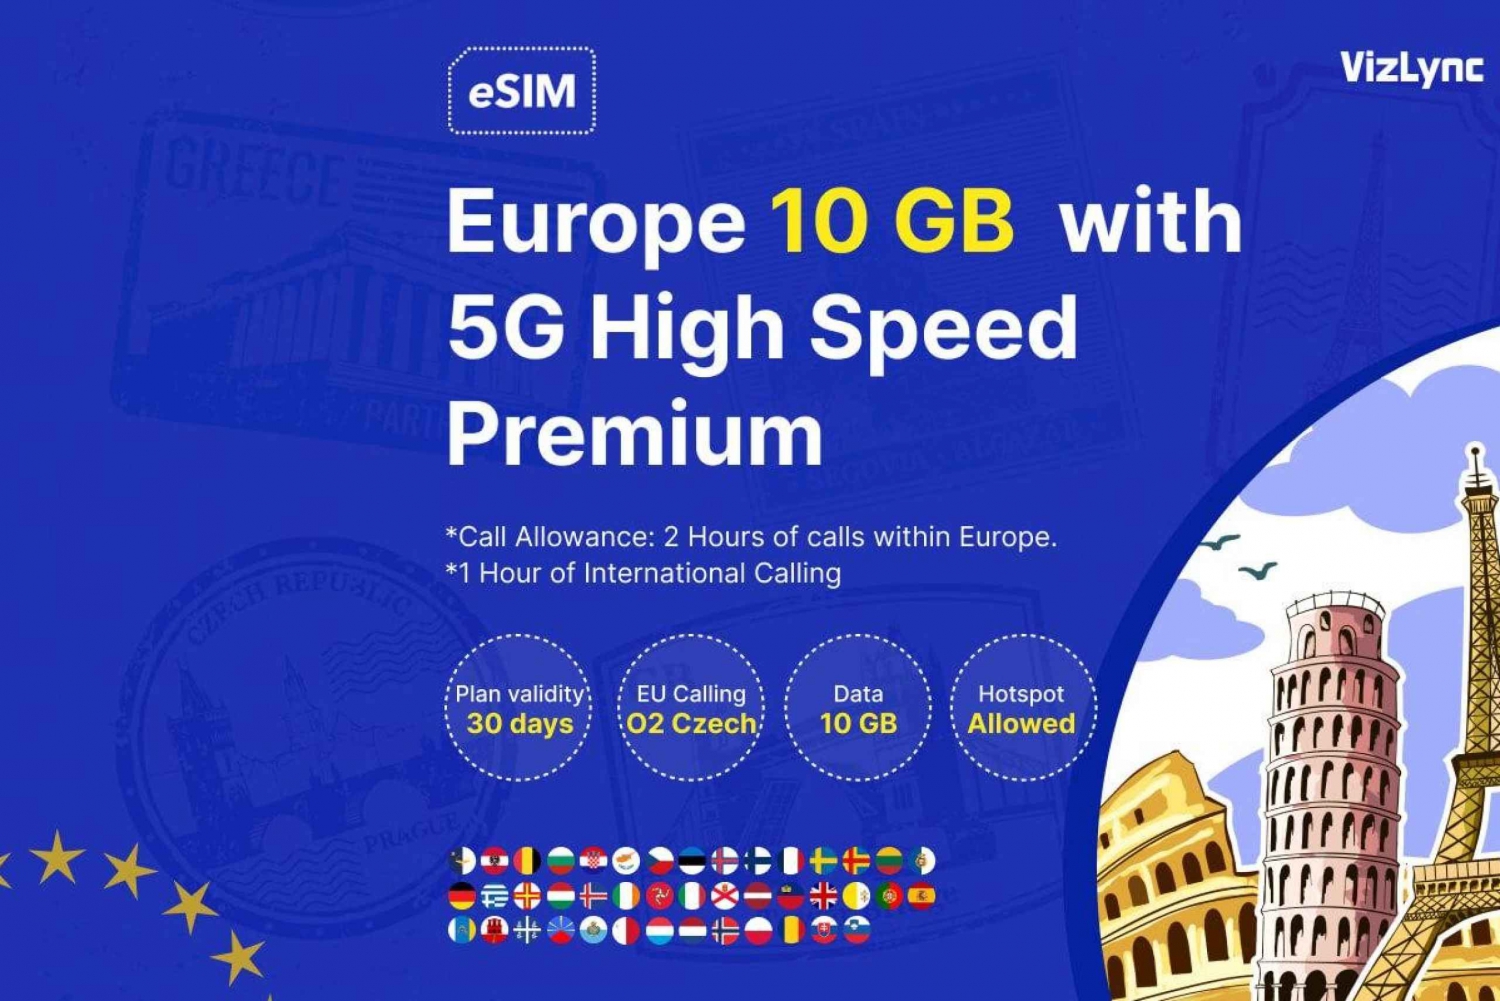 Explorez l'Europe avec un plan de données eSIM Premium à haut débit de 10 Go